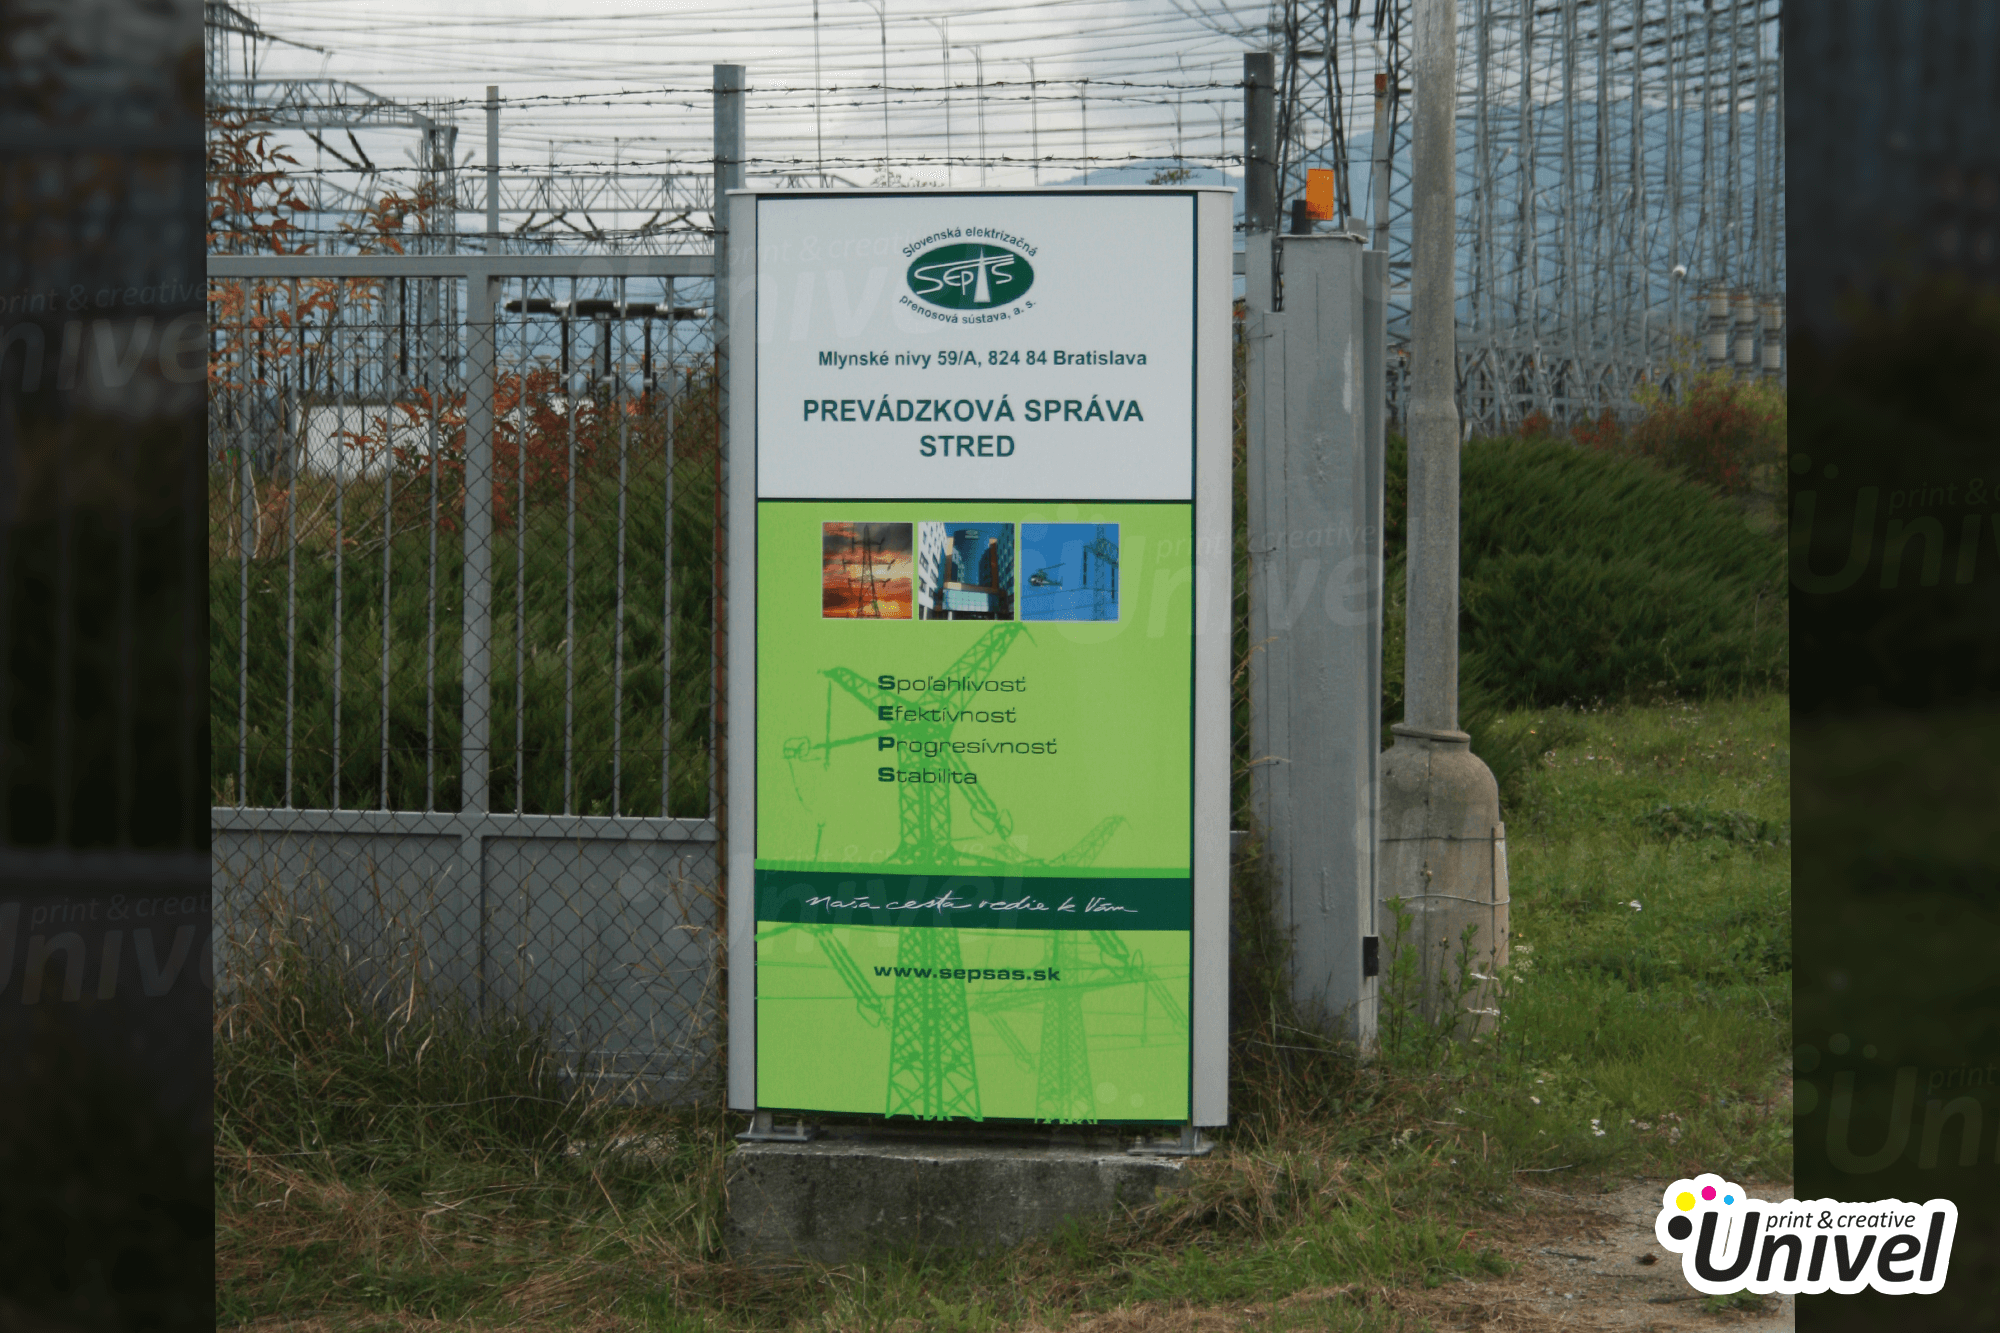 Univel 2012 - Reklamné a prezentačné systémy - SEPS Slovenská elektrizačná prenosová sústava - reklamný pútač